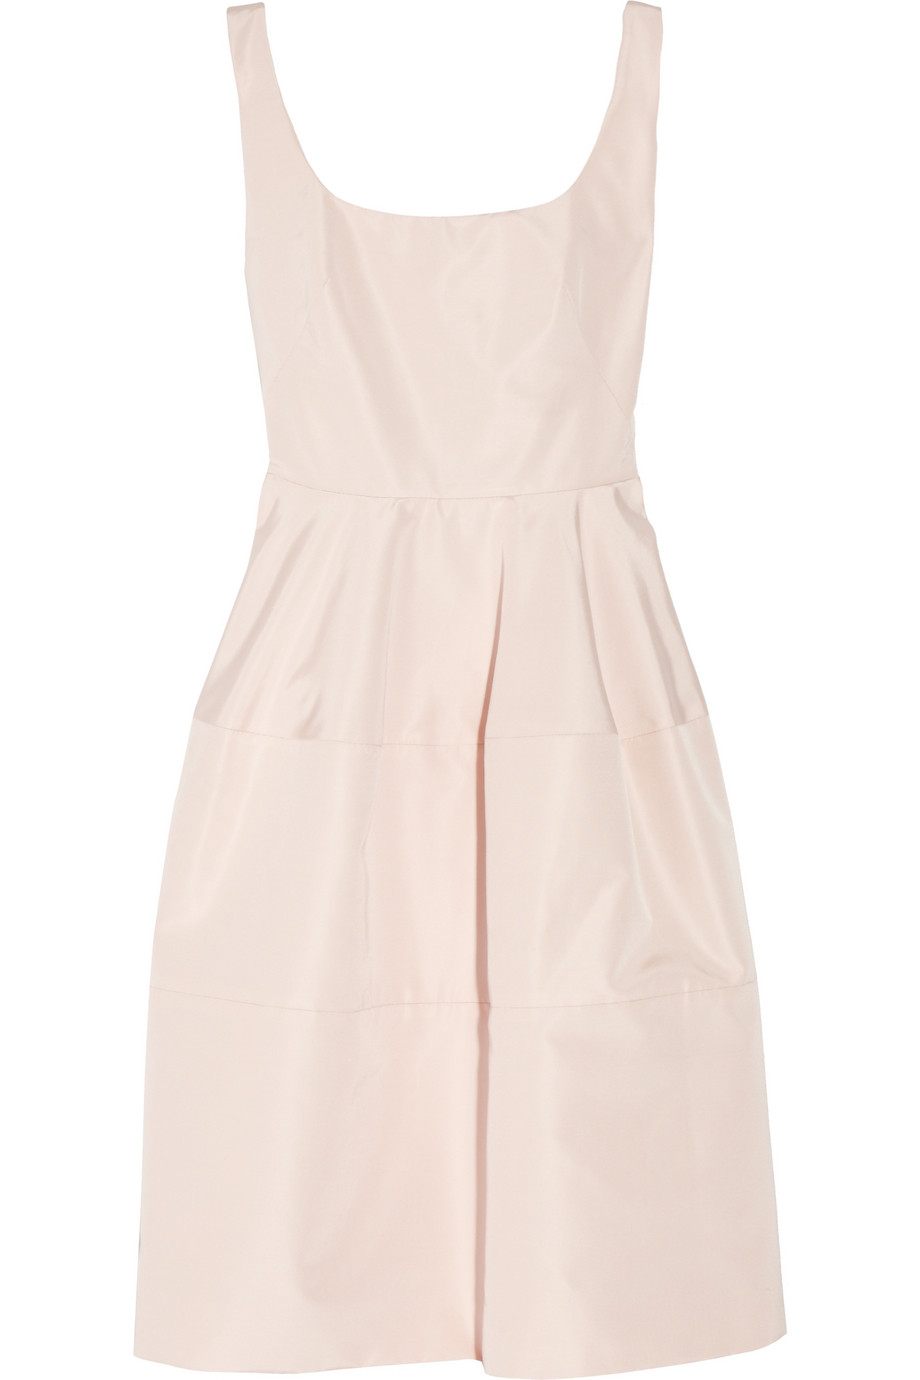 Lyst - Alexander Mcqueen Silk-faille Dress in Pink